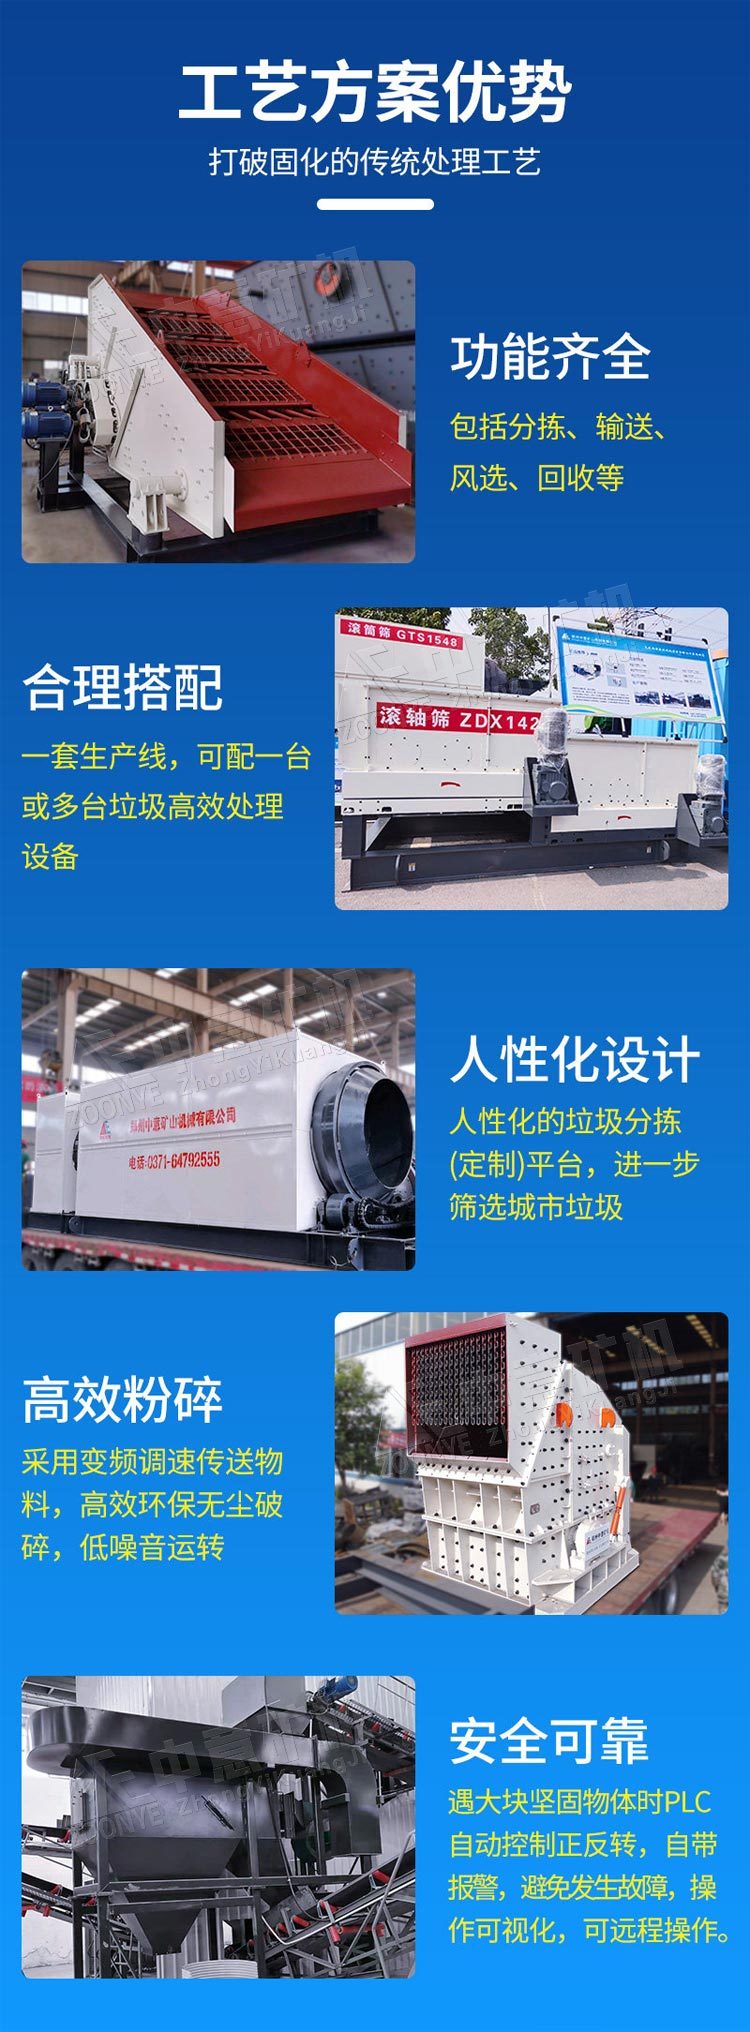 北京日产600吨装修垃圾分类分拣处理设备筛分效果好吗liu88